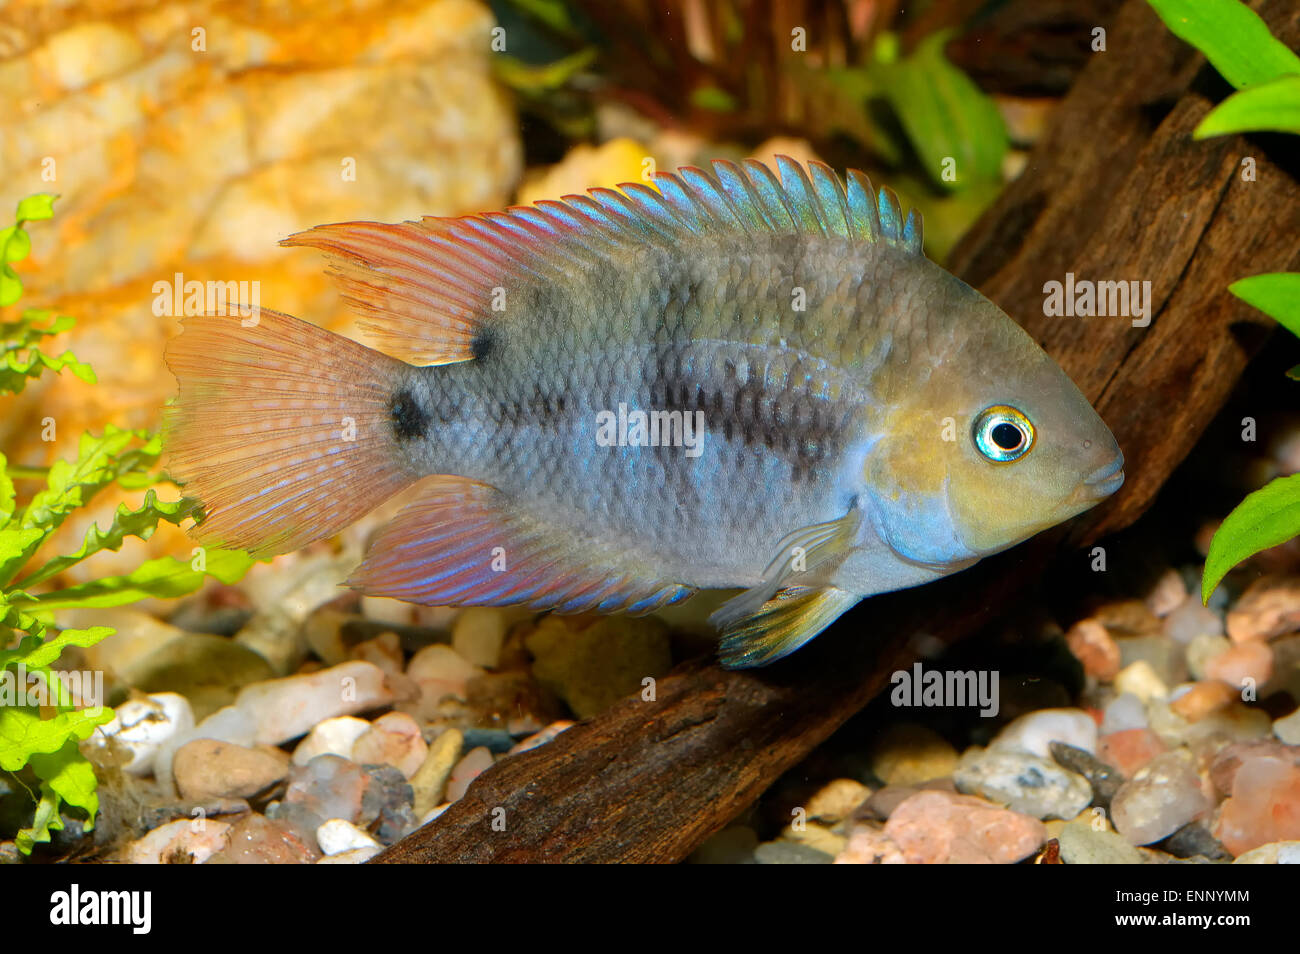 Tropical aquarium fish from genus Cryptoheros. Stock Photo